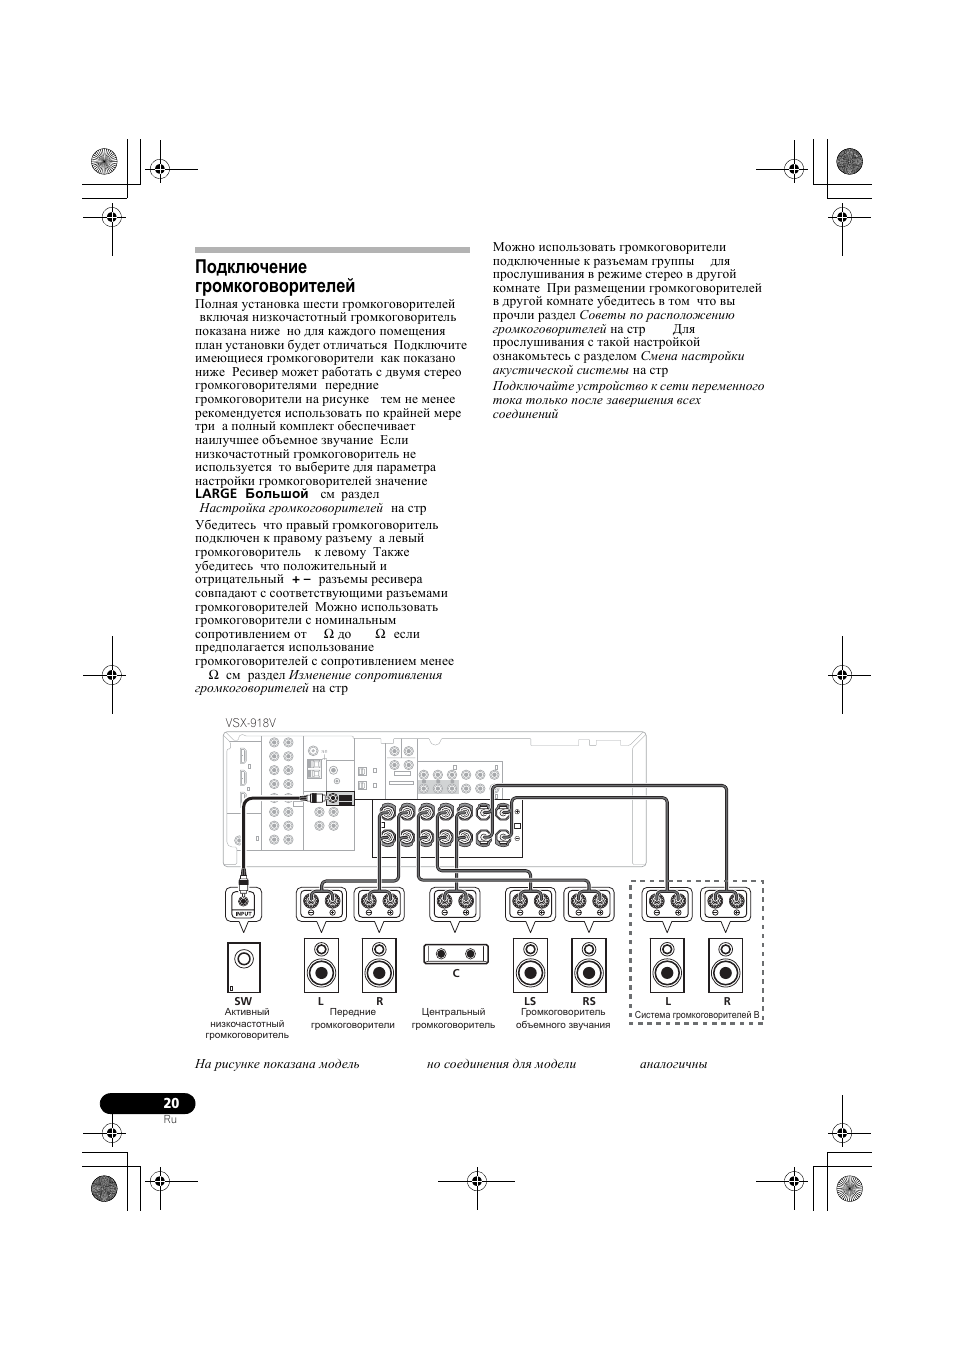 Подключение громкоговорителей, Vsx-918v | Инструкция по эксплуатации Pioneer VSX-918V-K | Страница 20 / 73